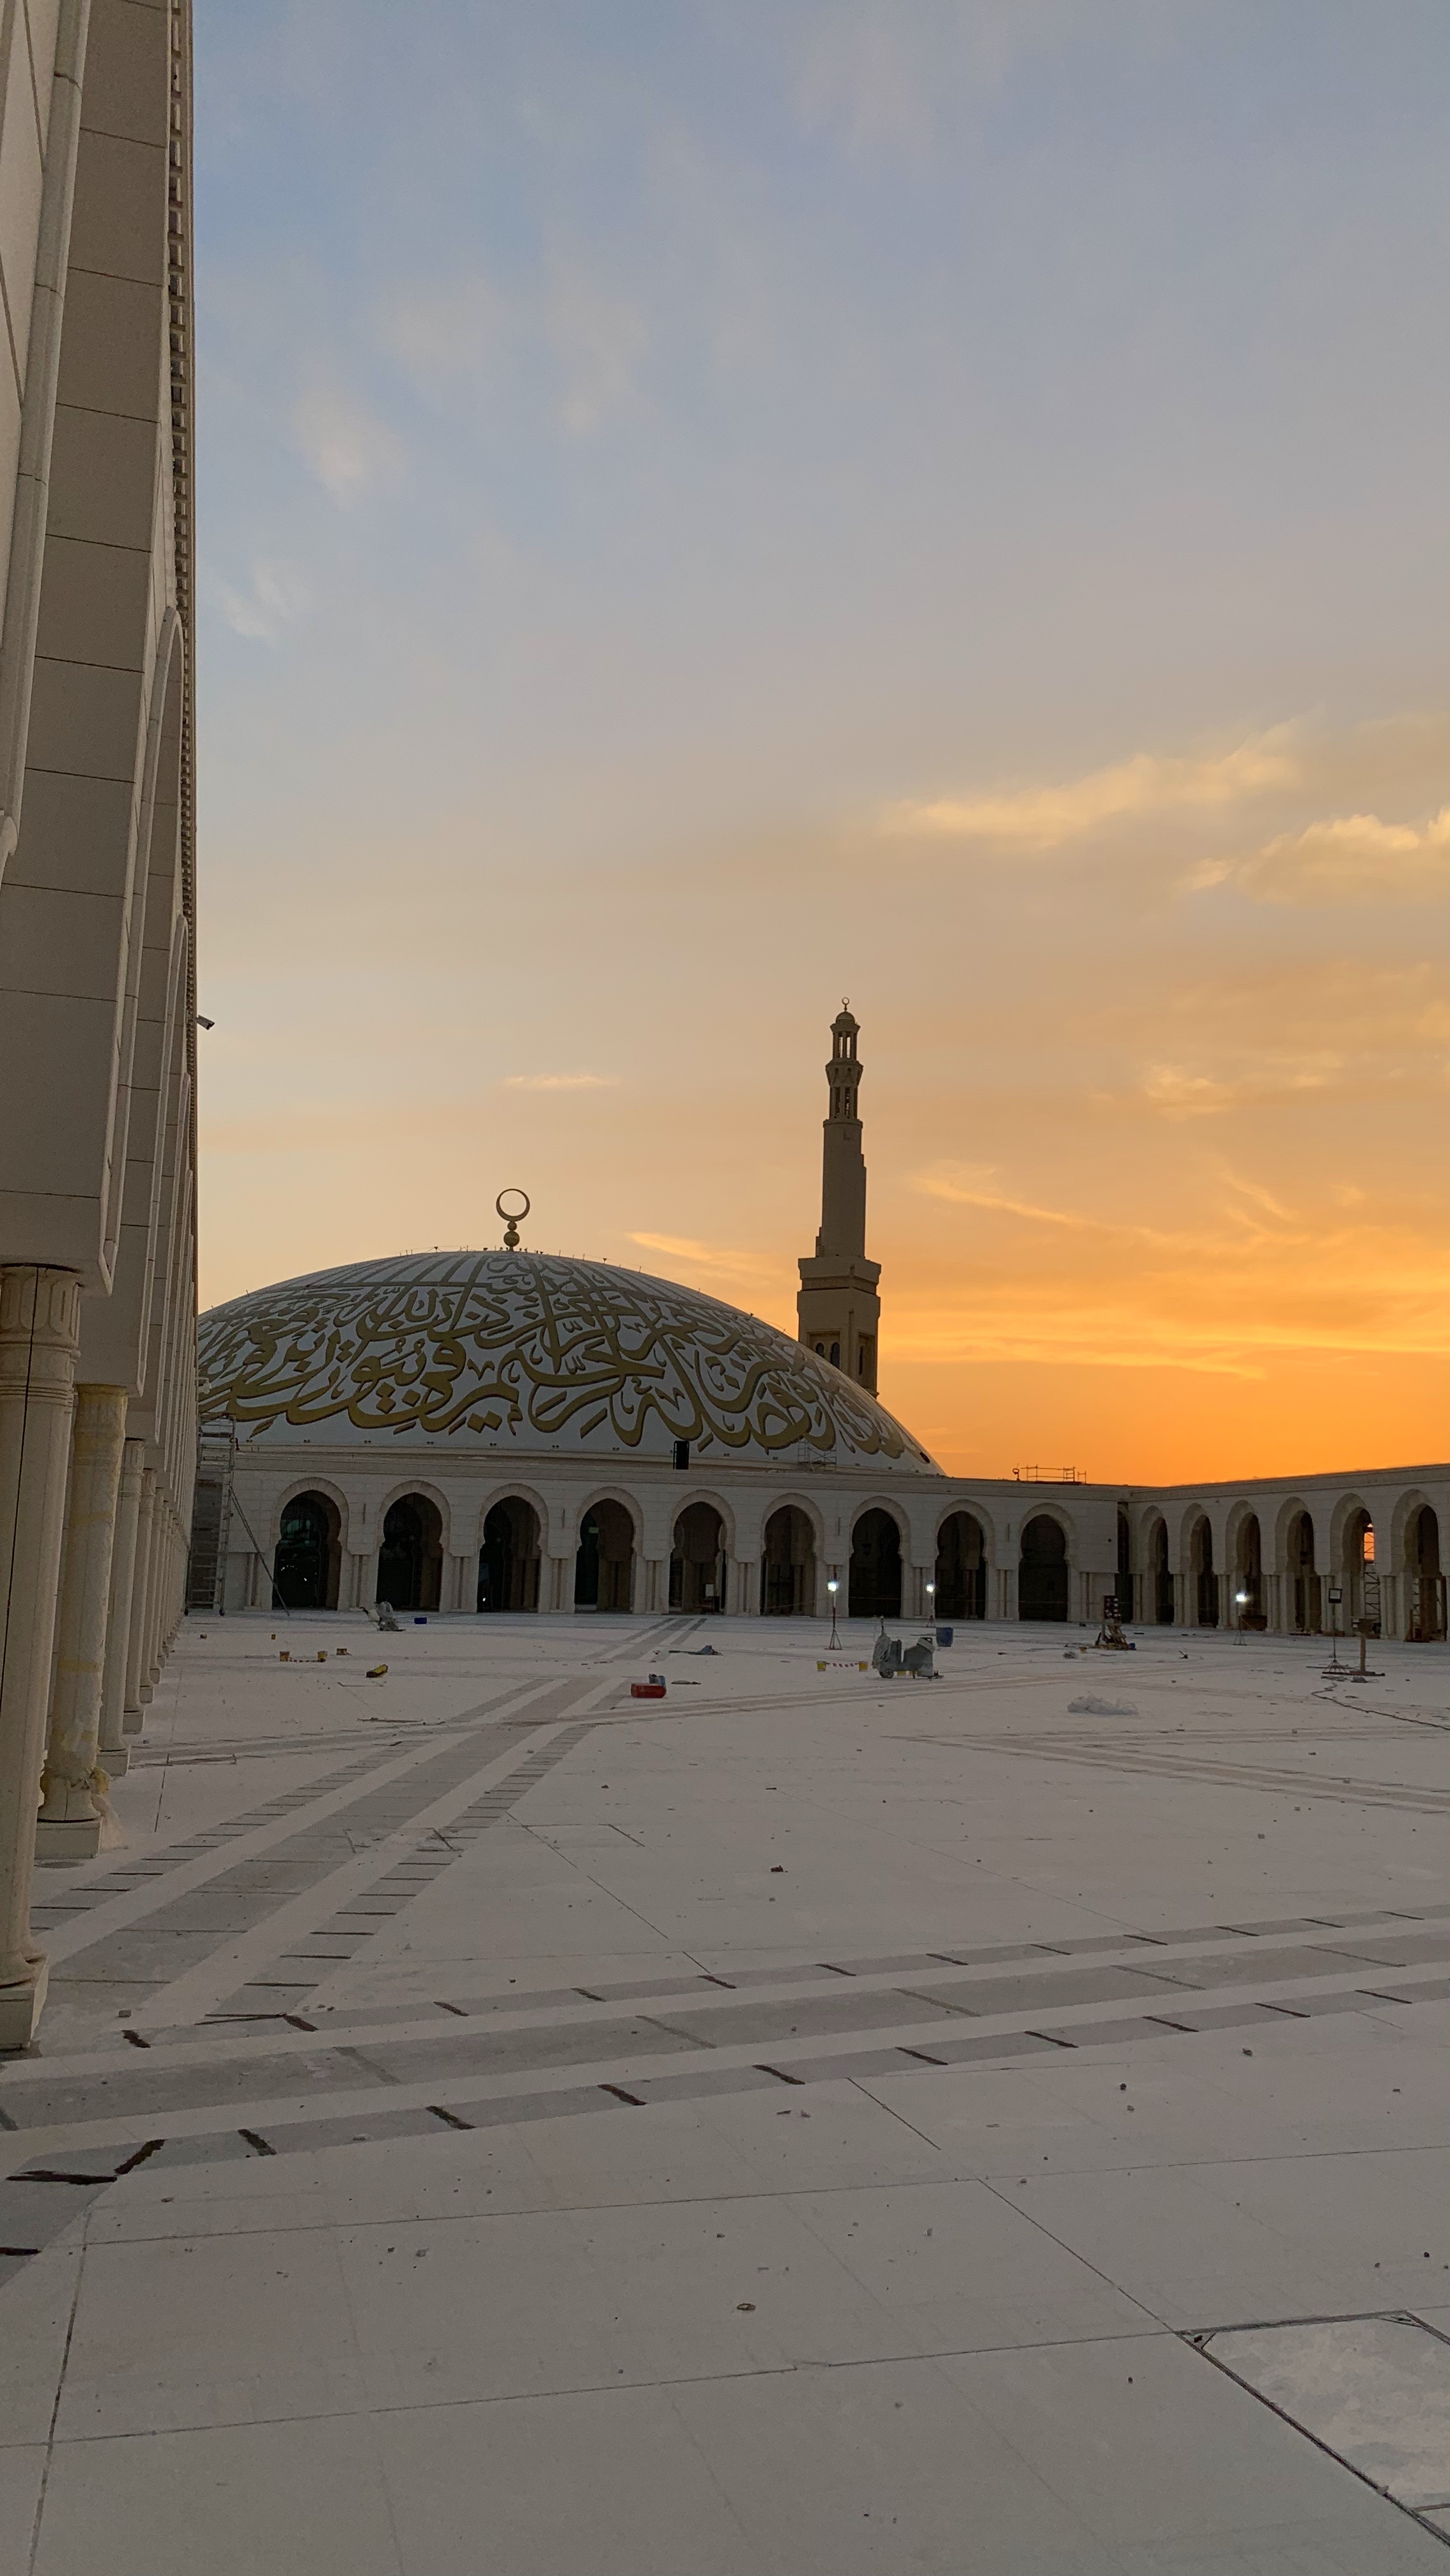 جامع الشيخ خليفة بن زايد في مدينة العين - قيد الانشاء .